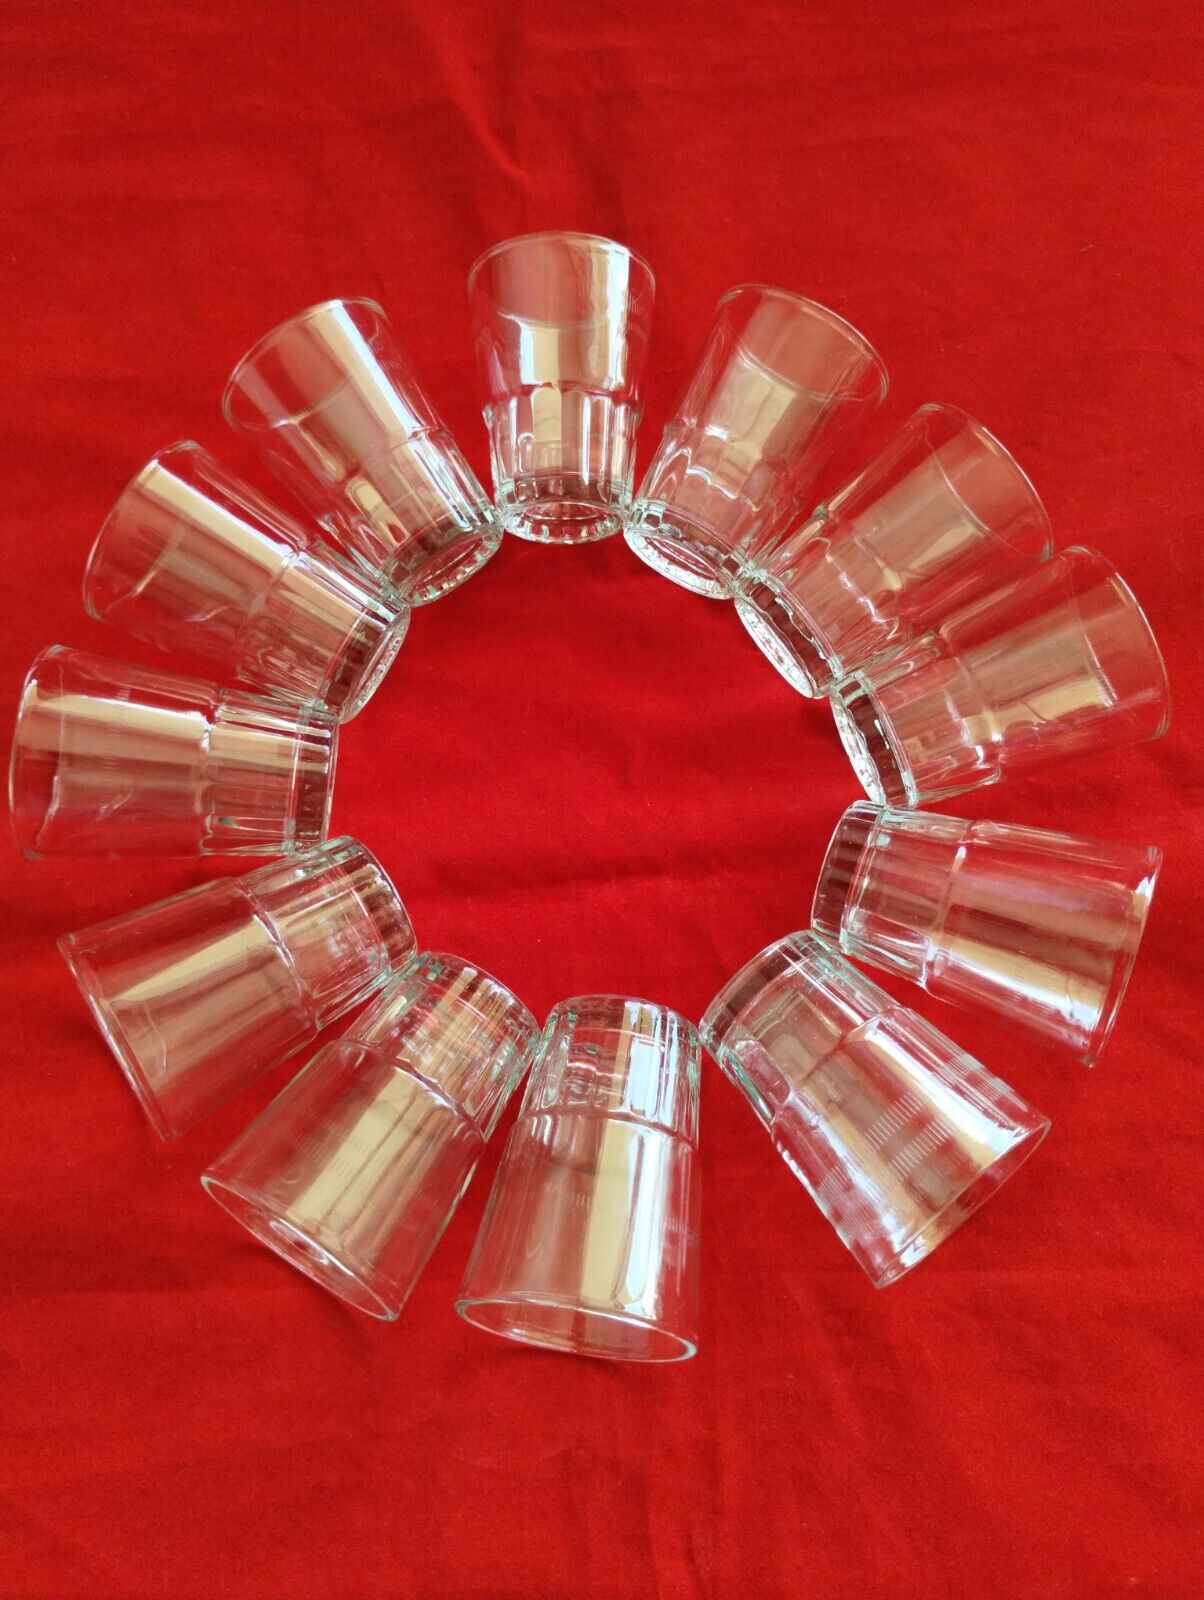 36 Shot Glasses Glass Barware Shots Drink Whiskey Vodka Tequilla 1.5 oz 3 Dozen